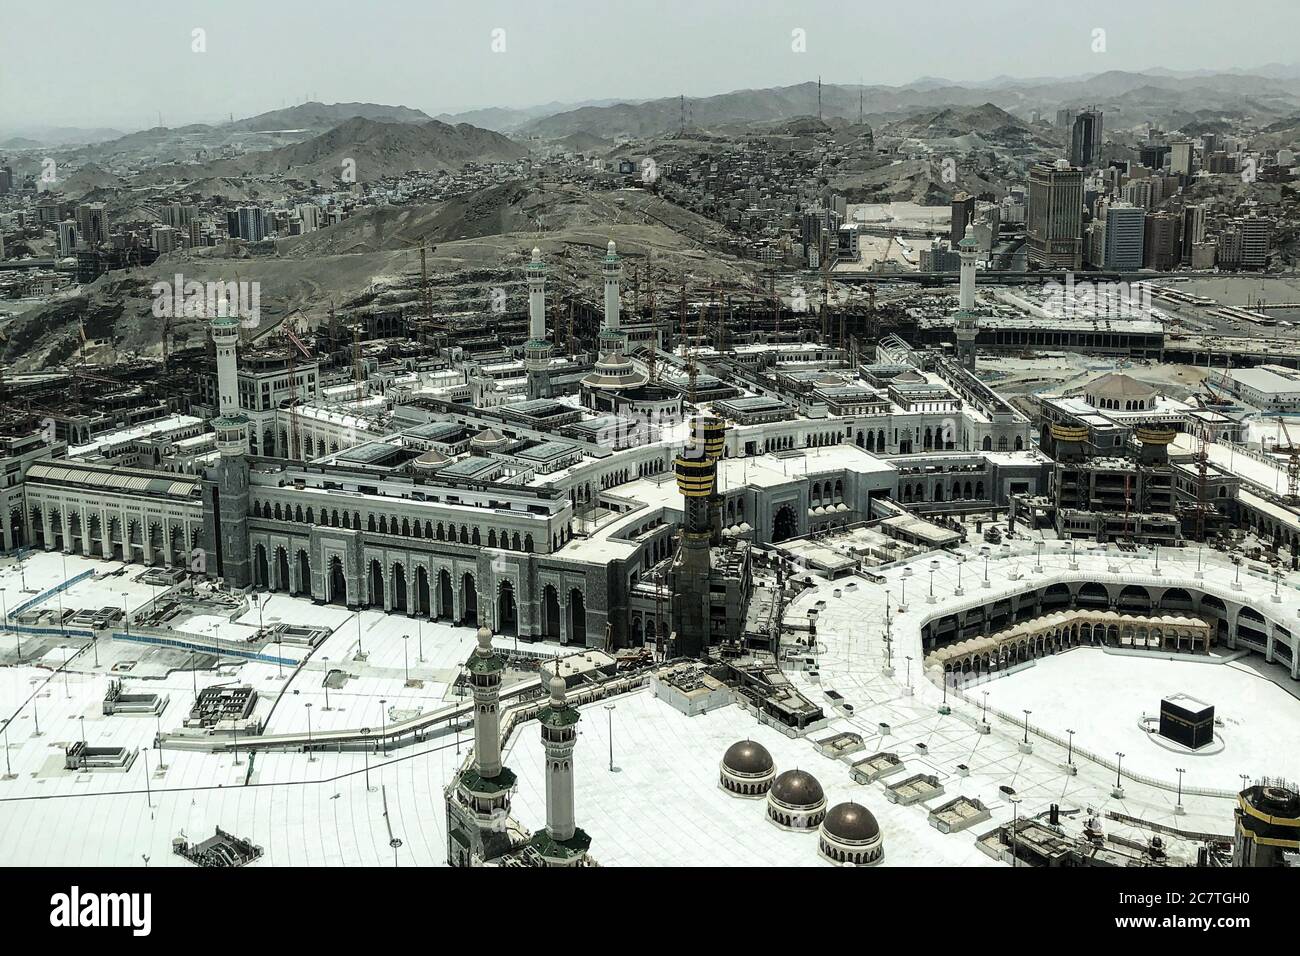 Meca, Arabia Saudita. 19 de julio de 2020. Una vista general sobre la Gran Mezquita vacía de la Meca (al-Masjid al-Haram), el lugar más sagrado del Islam que alberga la peregrinación anual del Hajj. El Ministerio de Hajj y Umrah de Arabia Saudita ha anunciado que la peregrinación de este año tendrá lugar "con un número muy limitado" de personas que ya residen en Arabia Saudita. Crédito: Islam Marey/dpa/Alamy Live News Foto de stock